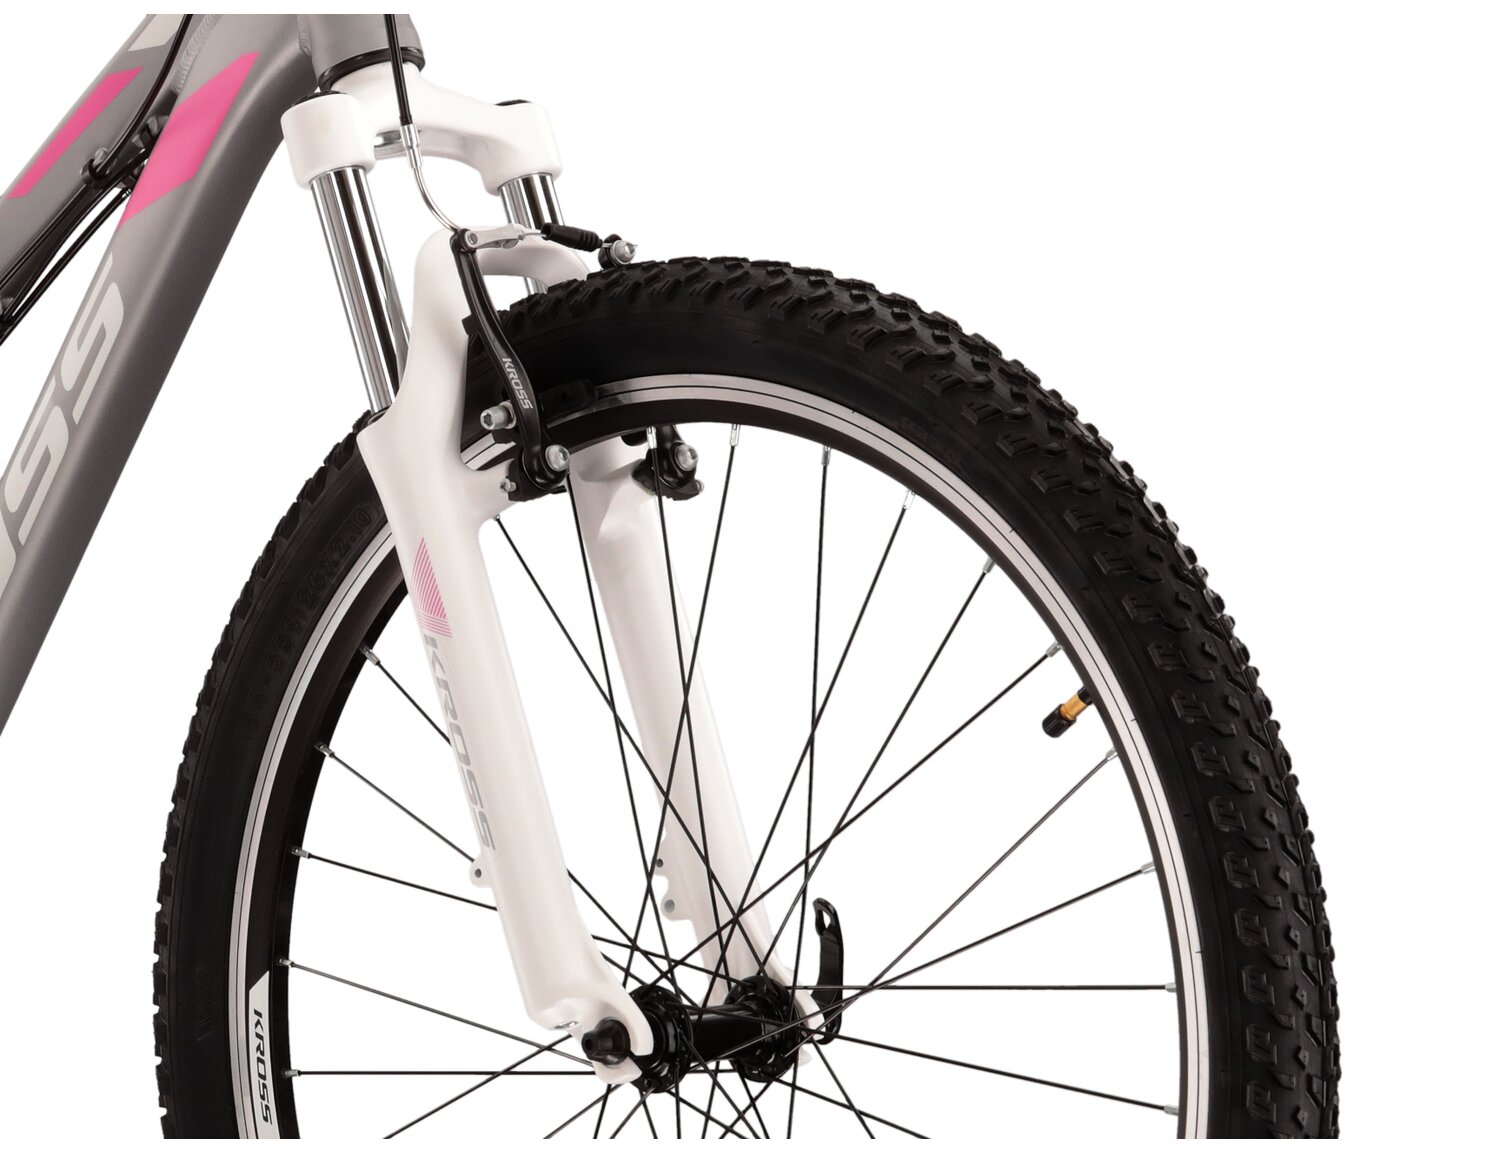  Aluminowa rama, amortyzowany widelec Zoom Forgo 565 o skoku 80mm oraz opony o szerokości 2,1 cala w damskim rowerze górskim MTB Woman KROSS Lea 2.0 SK